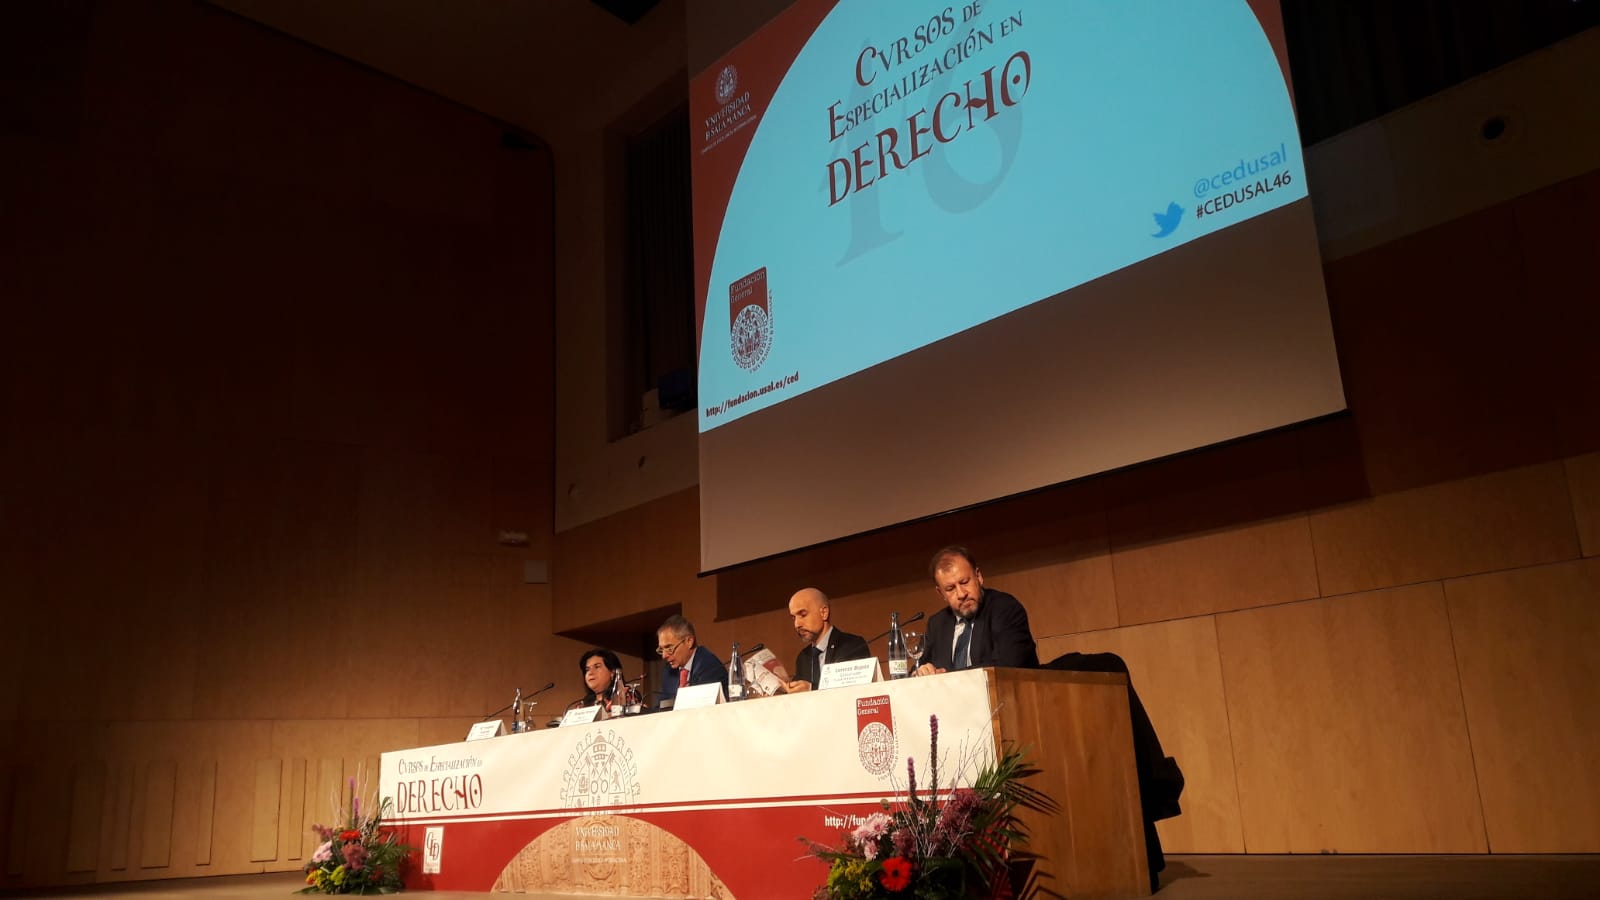 Los XLVI Cursos de Especialización en Derecho de la Universidad de Salamanca reciben a 300 alumnos latinoamericanos